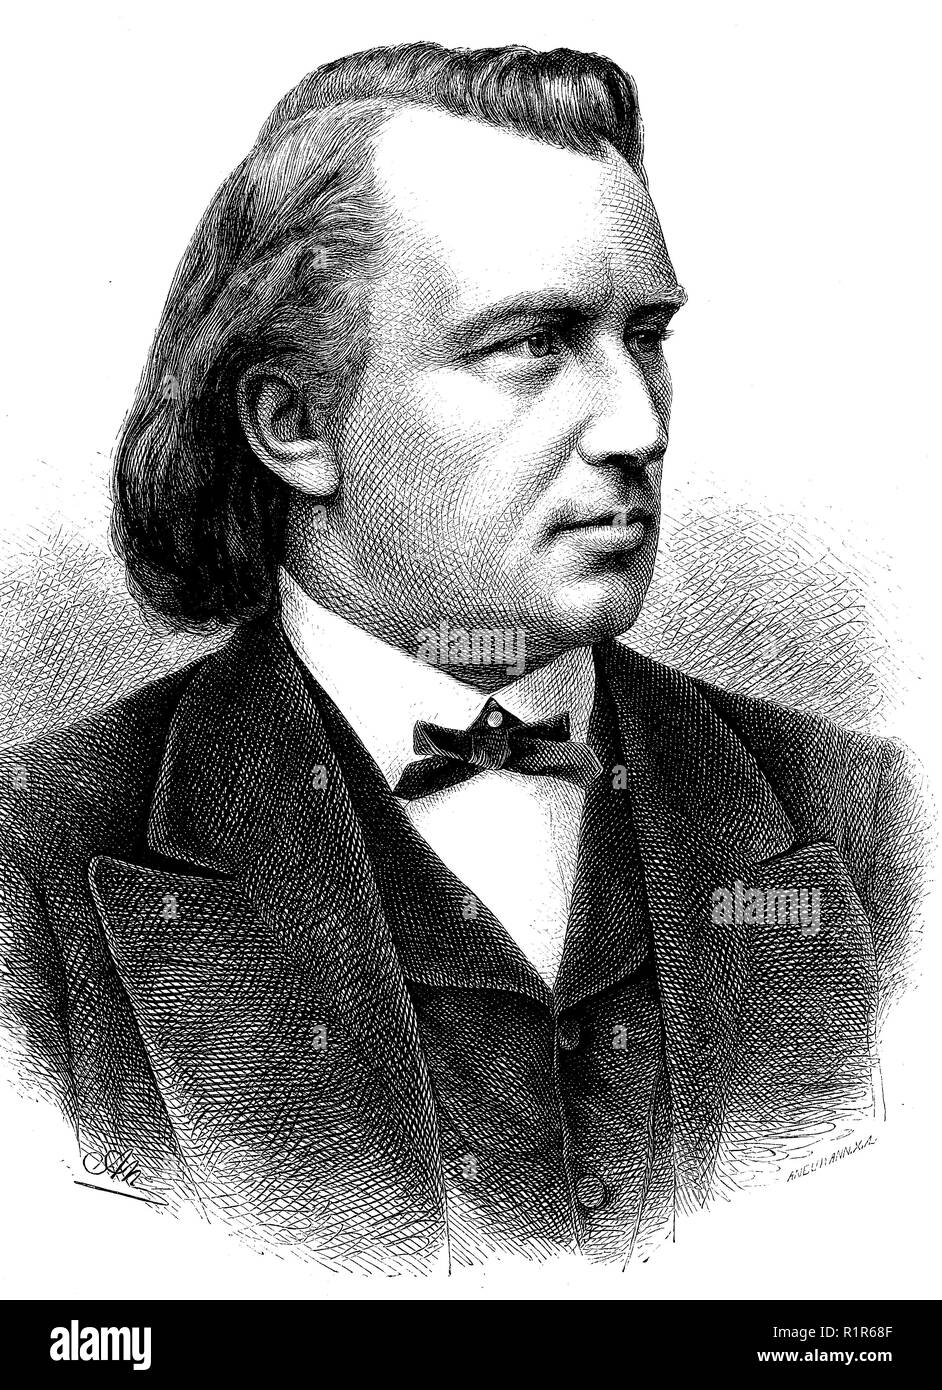 L'amélioration de la reproduction numérique, Johannes Brahms, 1833-1897, un pianiste et compositeur allemand de la période romantique, tirage original de l'année 1880 Banque D'Images